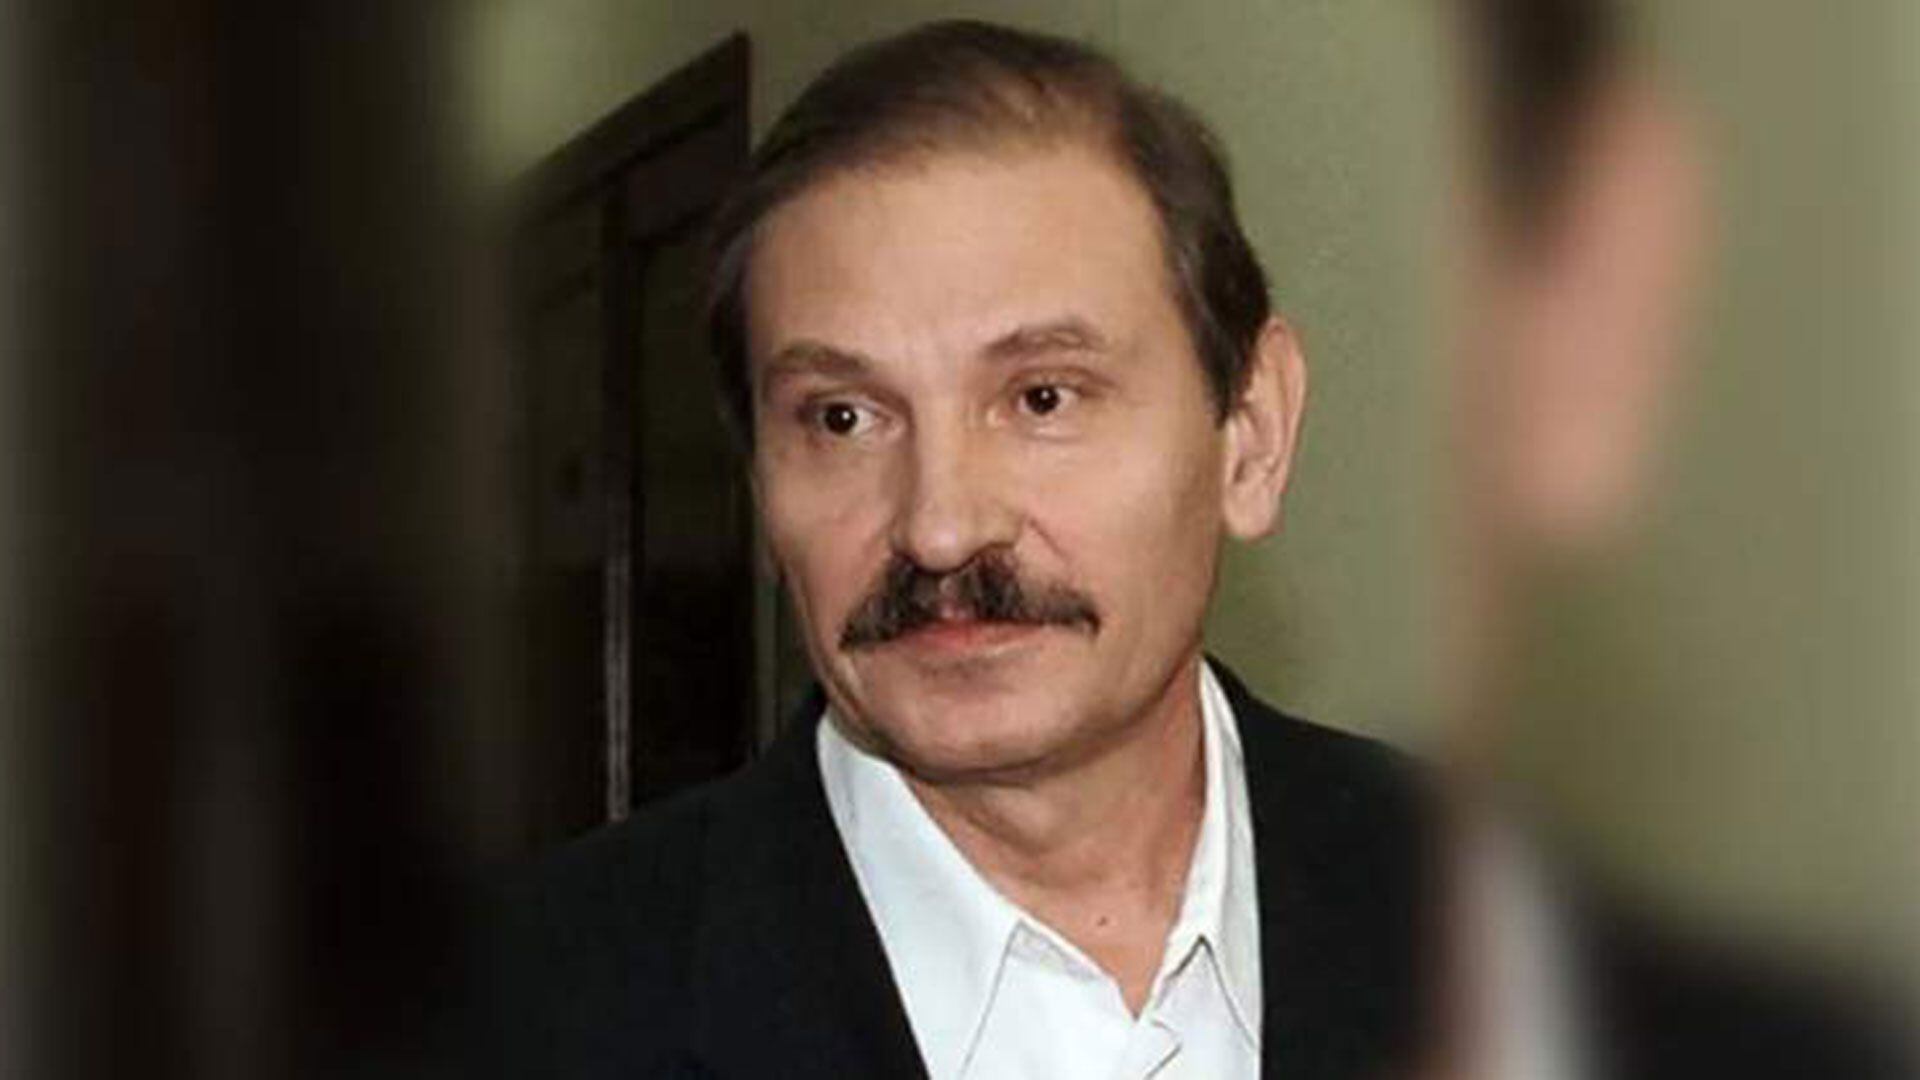 Nikolai Glushkov fue acusado por la Justicia rusa y hasta pasó años tras las rejas. Finalmente, también fue asesinado